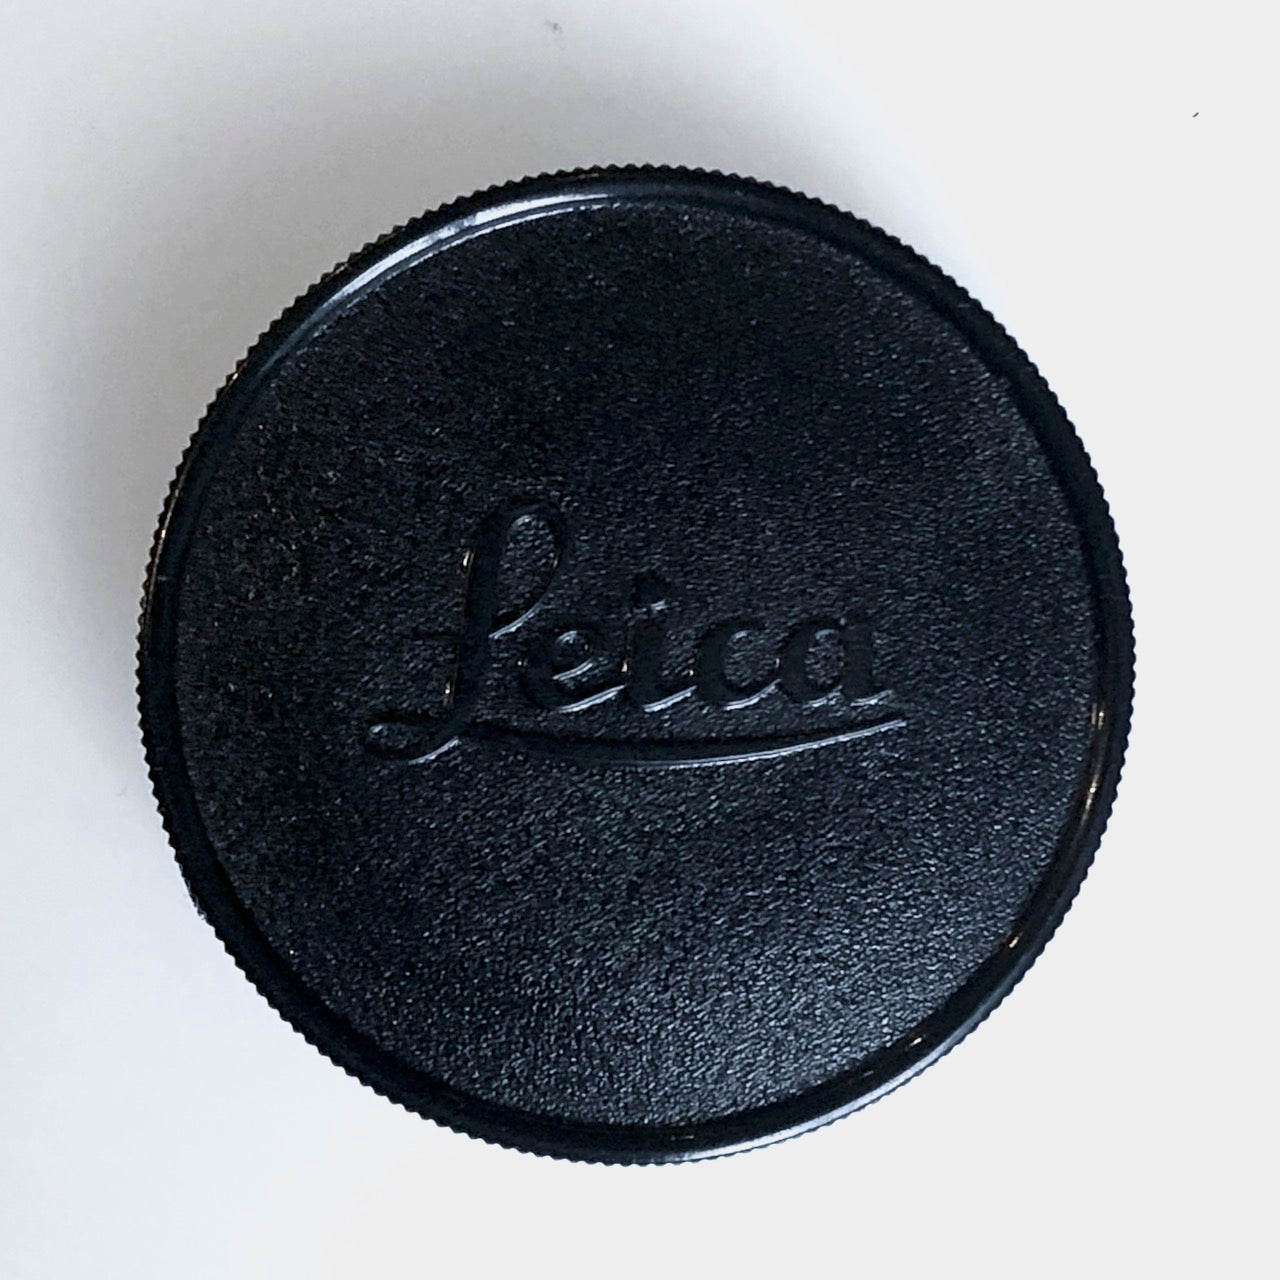 Leica M body cap